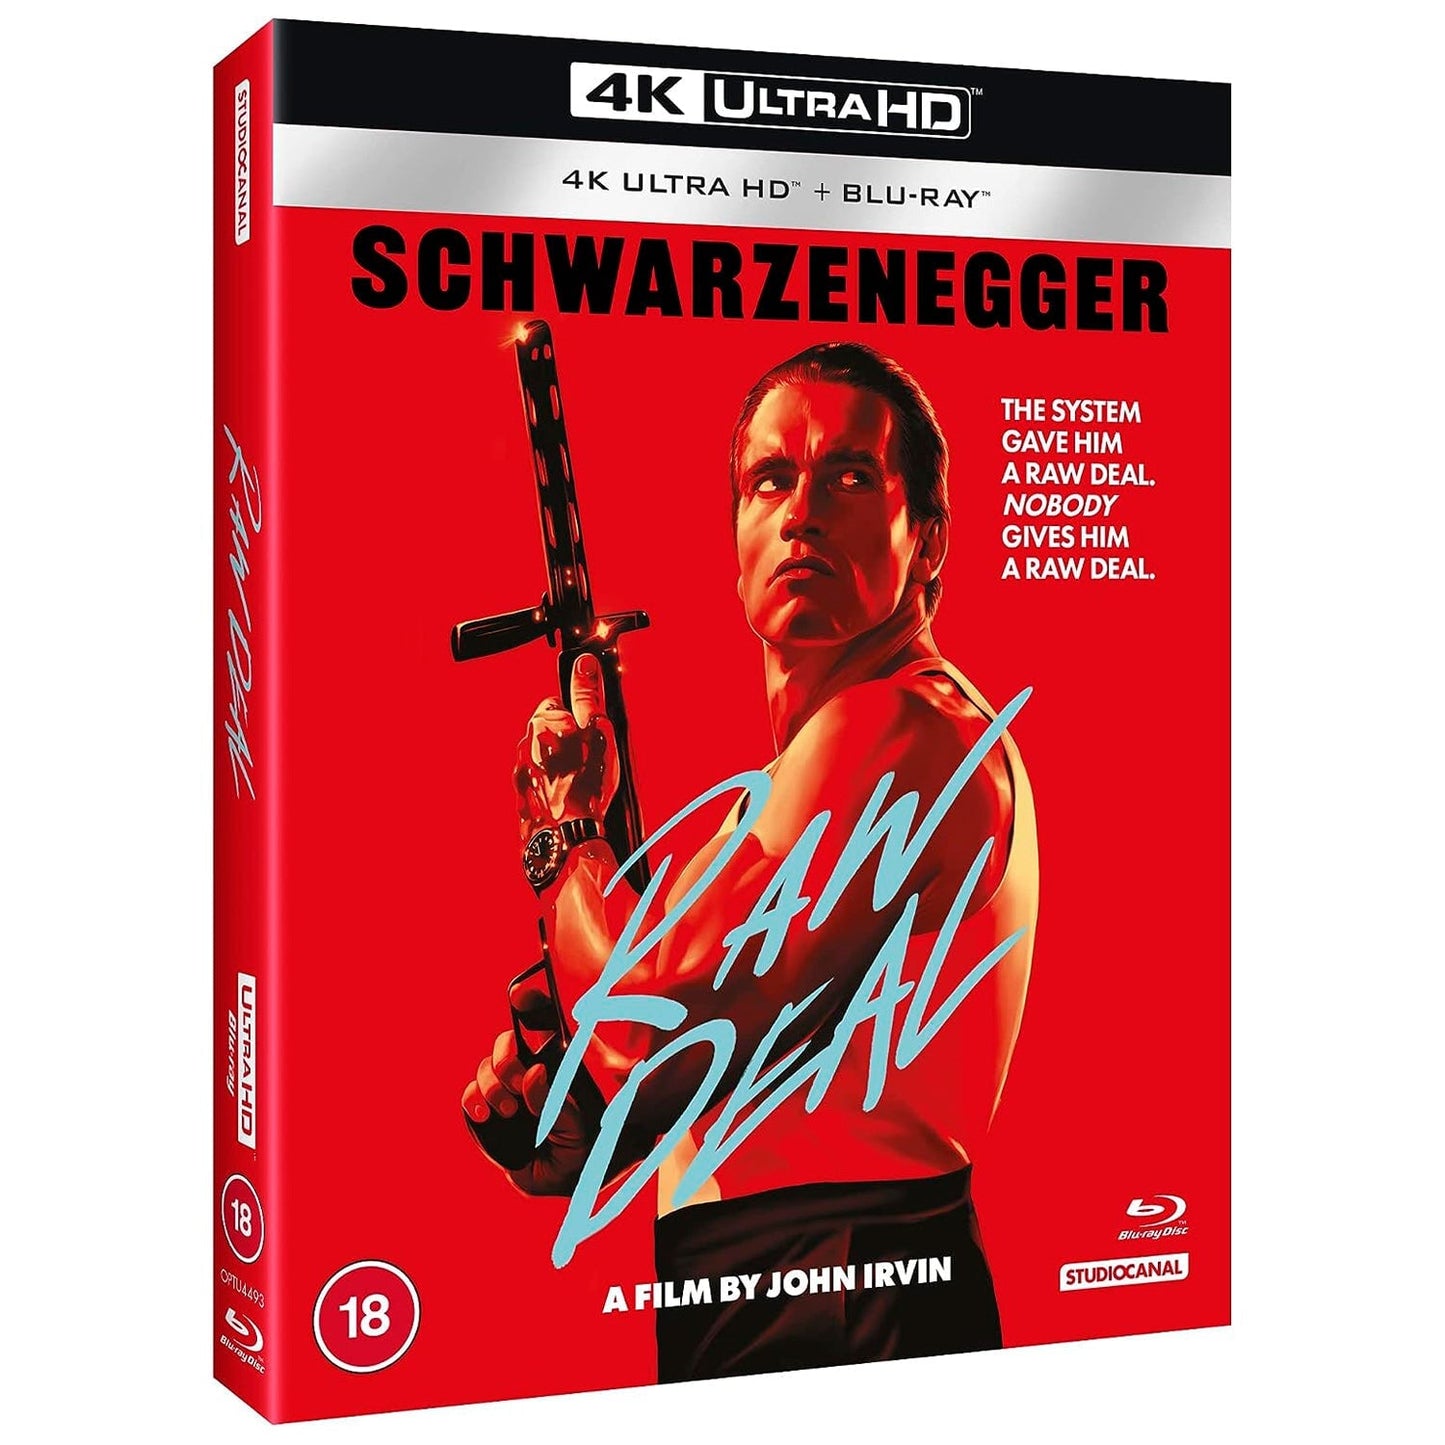 Без компромиссов (Raw Deal) (англ. язык) (4K UHD + Blu-ray)